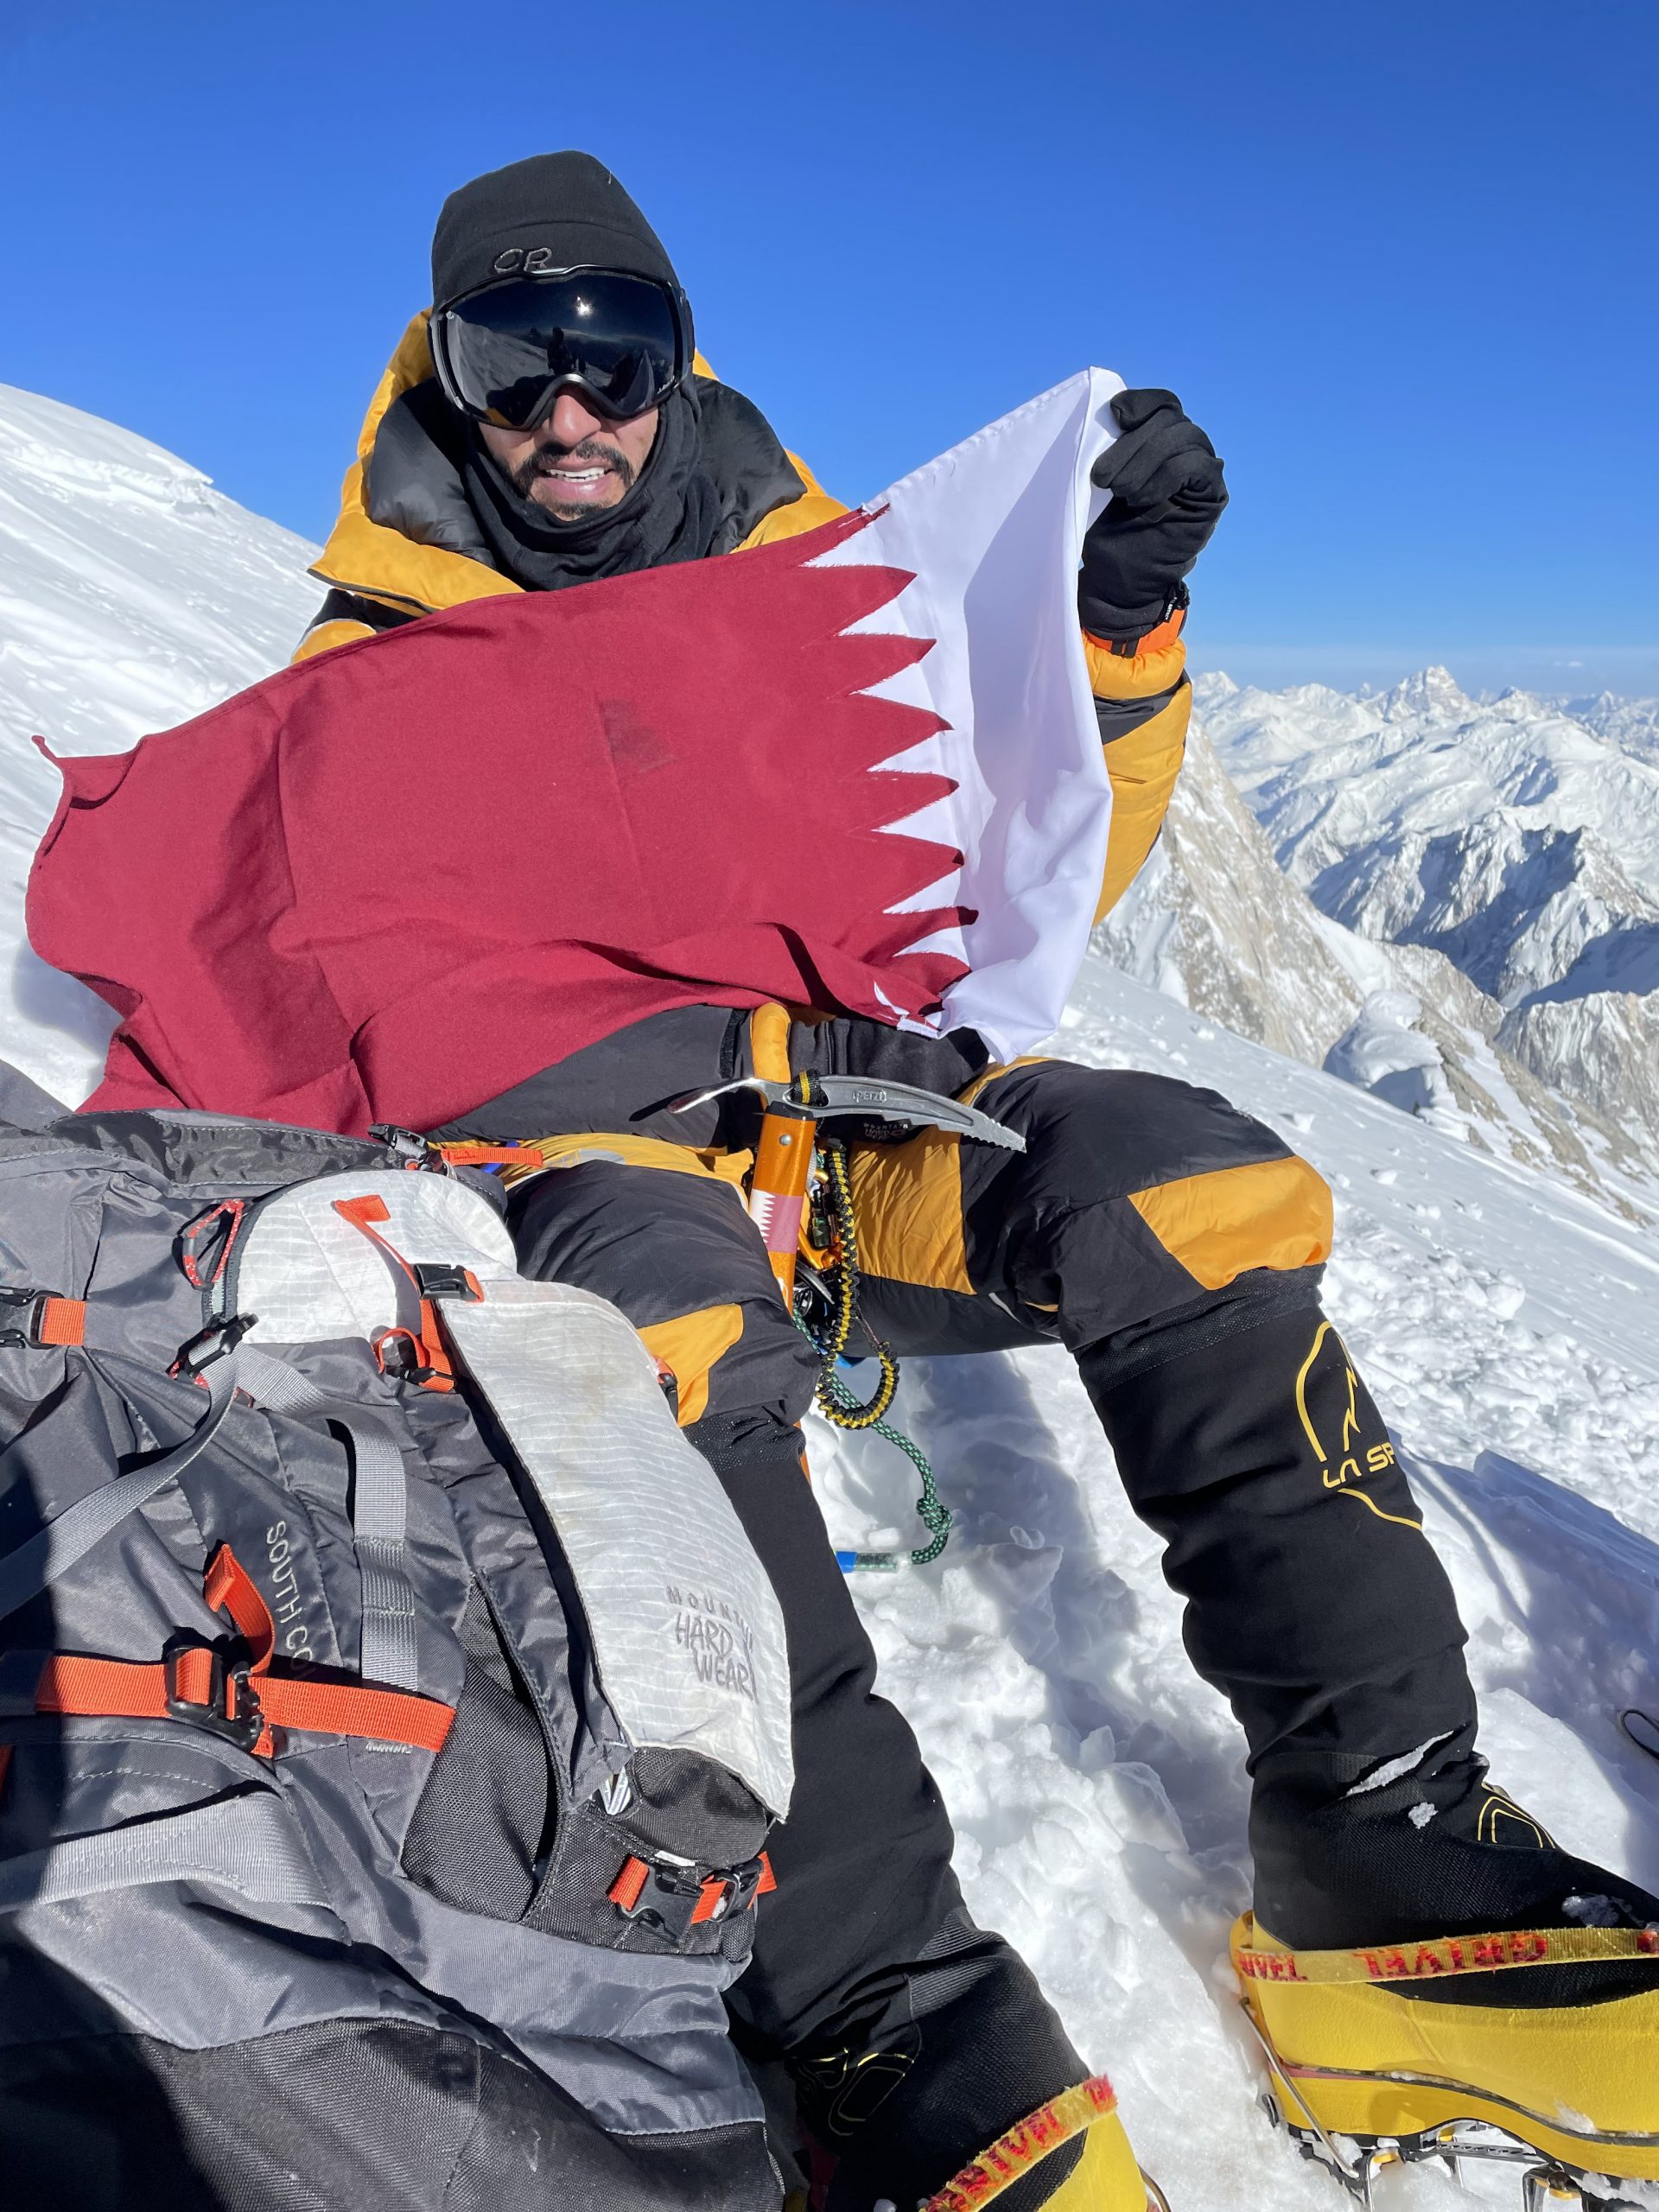 Qatari adventurer succeeds in raising Qatari flag over the world’s 12th highest peak